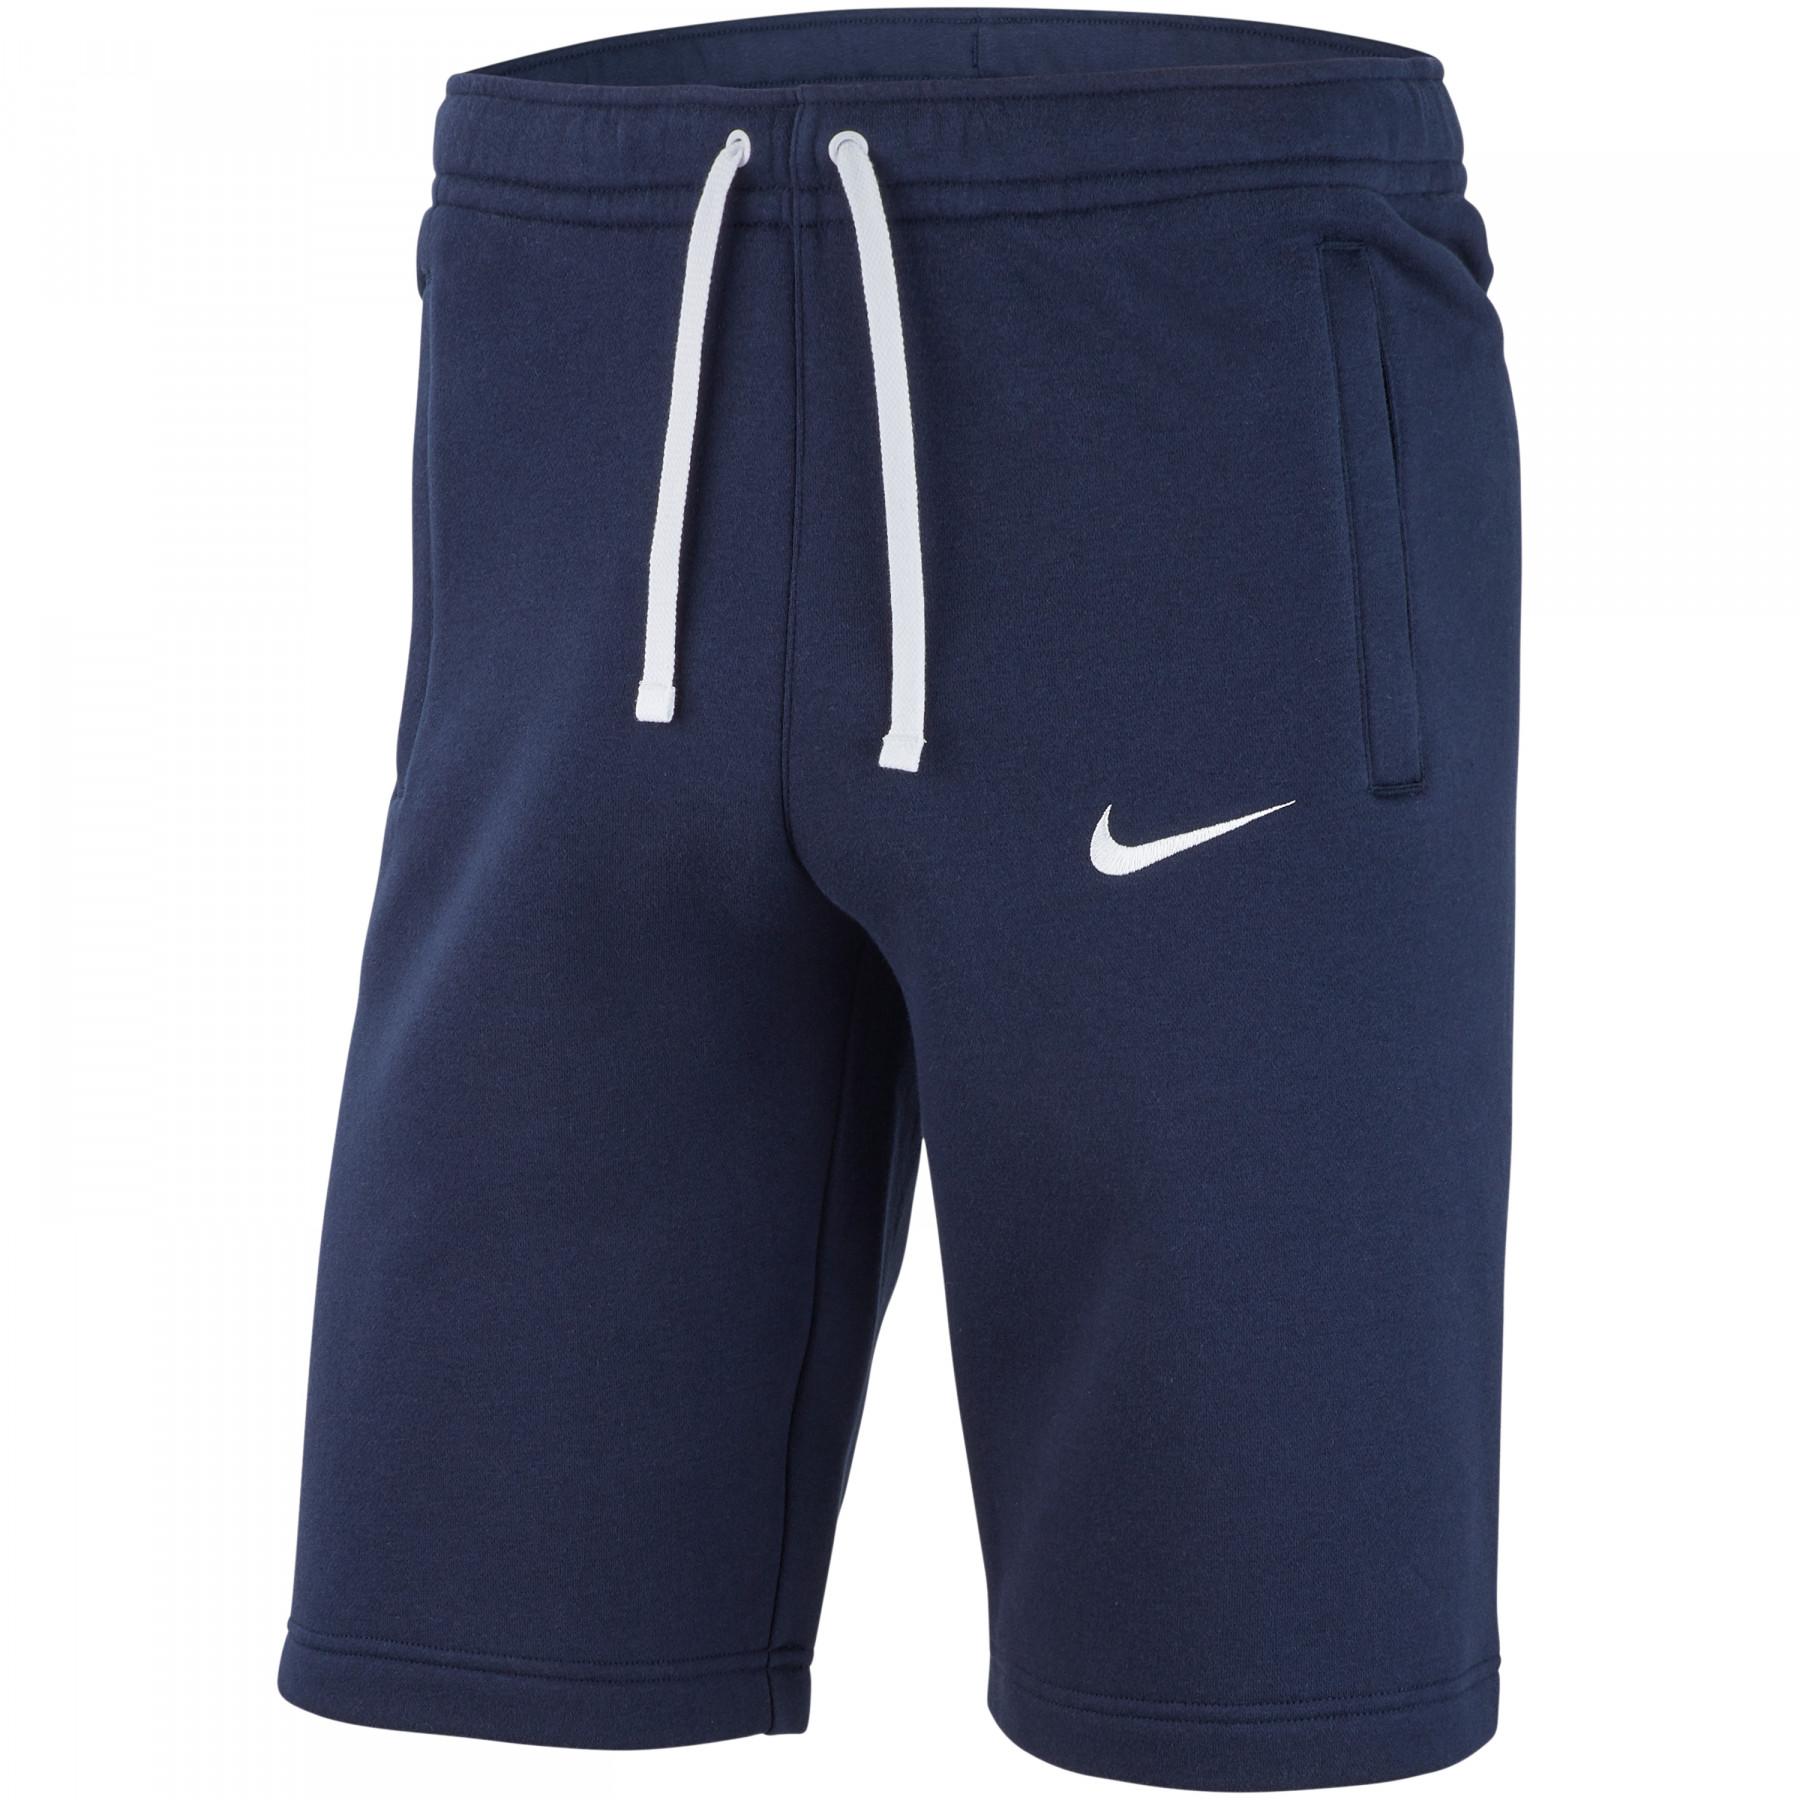 Ver internet fricción oferta Pantalones cortos para niños Nike Club19